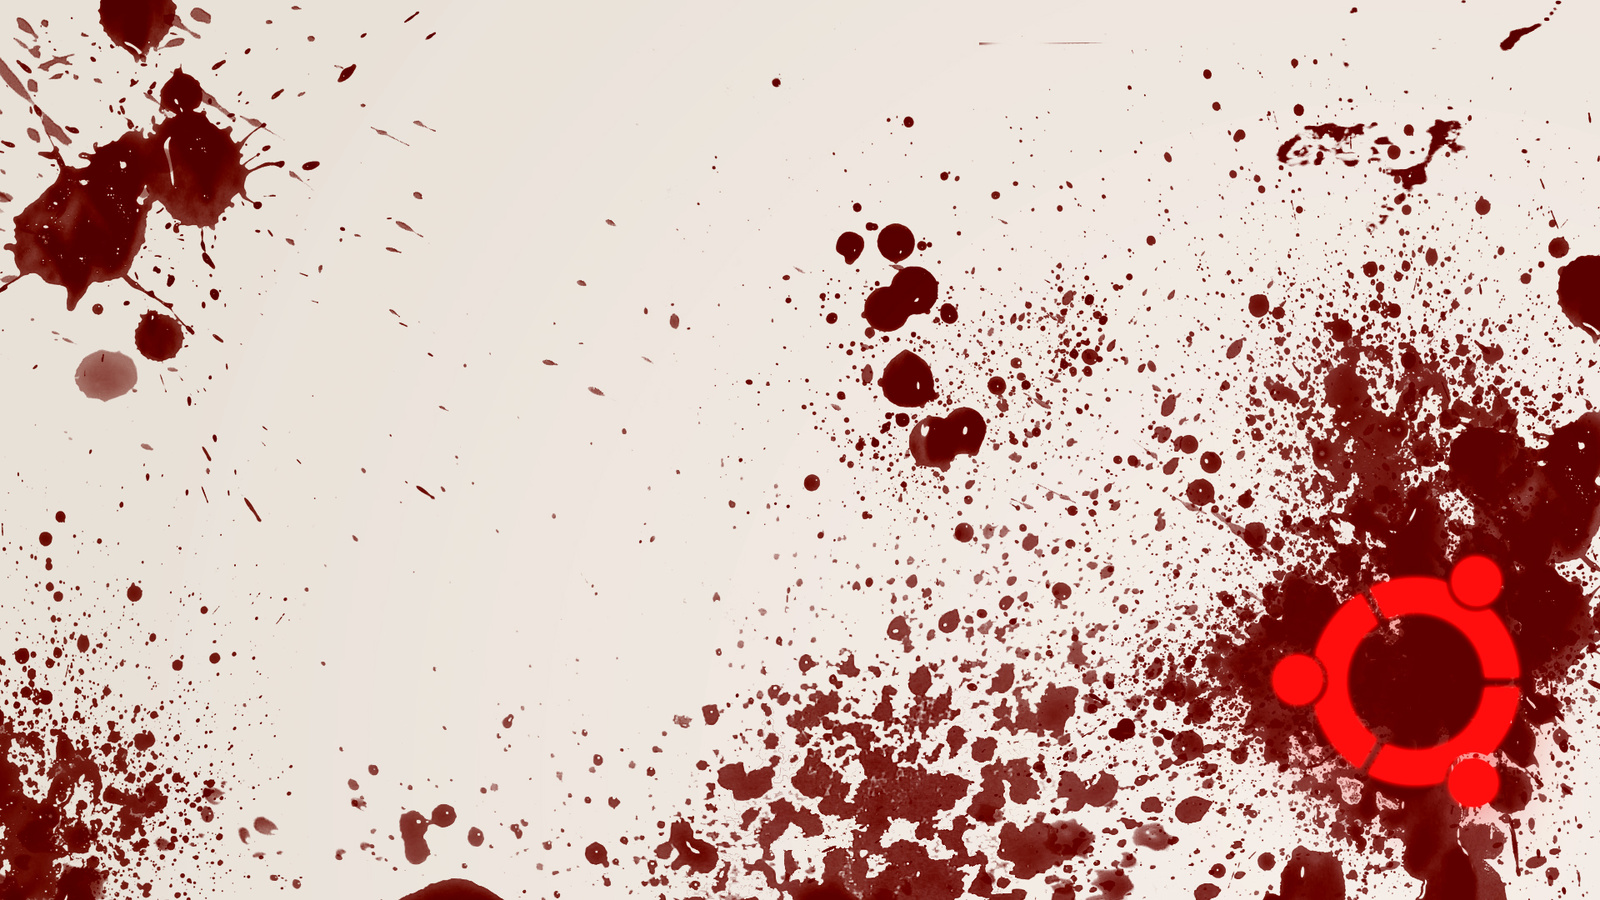 ubuntu blood  wallpaper by presabranca-d3ckvh0